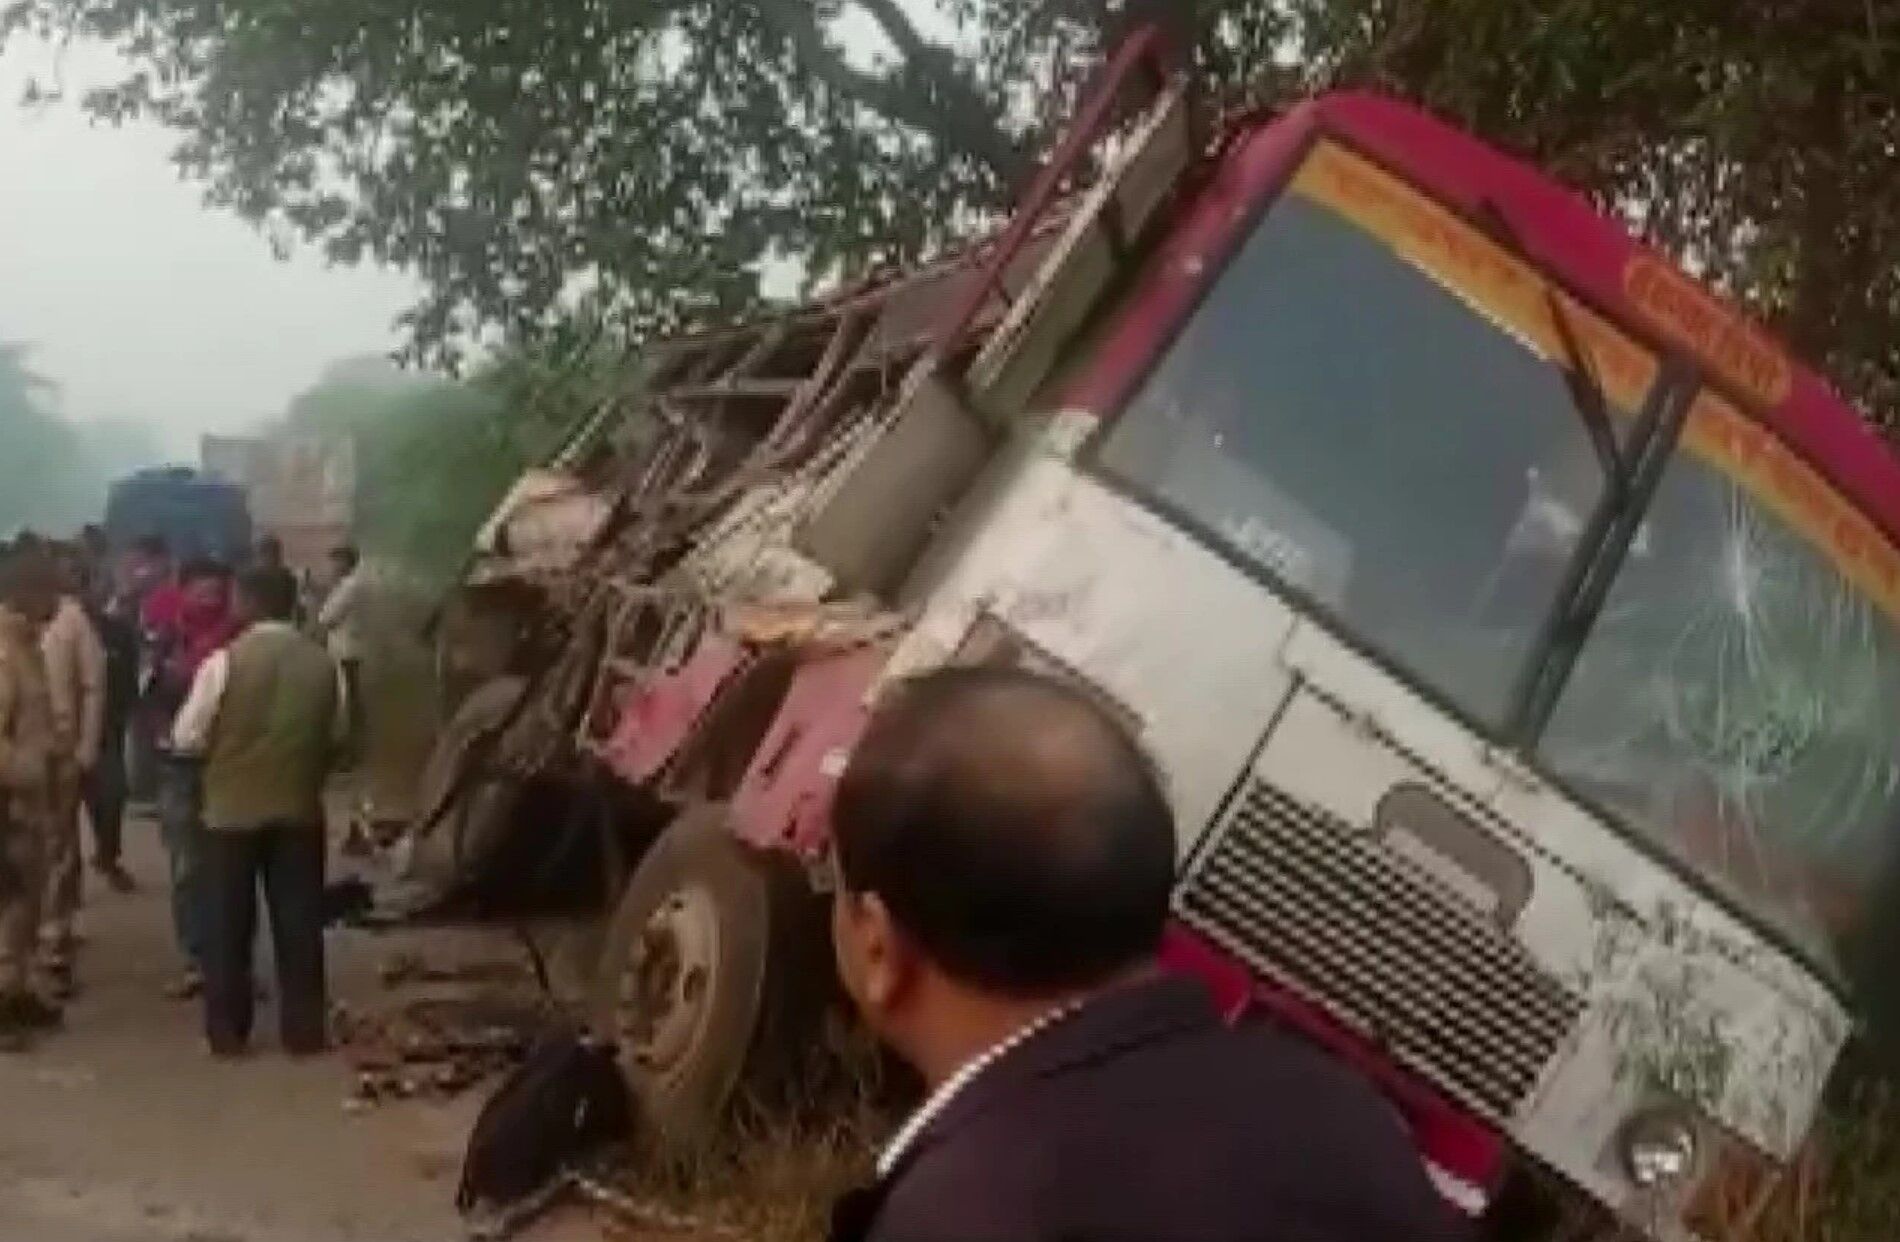 UP : बहराइच-लखनऊ हाईवे पर बस-ट्रक की जोरदार भिड़ंत, ड्राइवर समेत 6 की मौत 15 जख्मी, CM ने जताया शोक